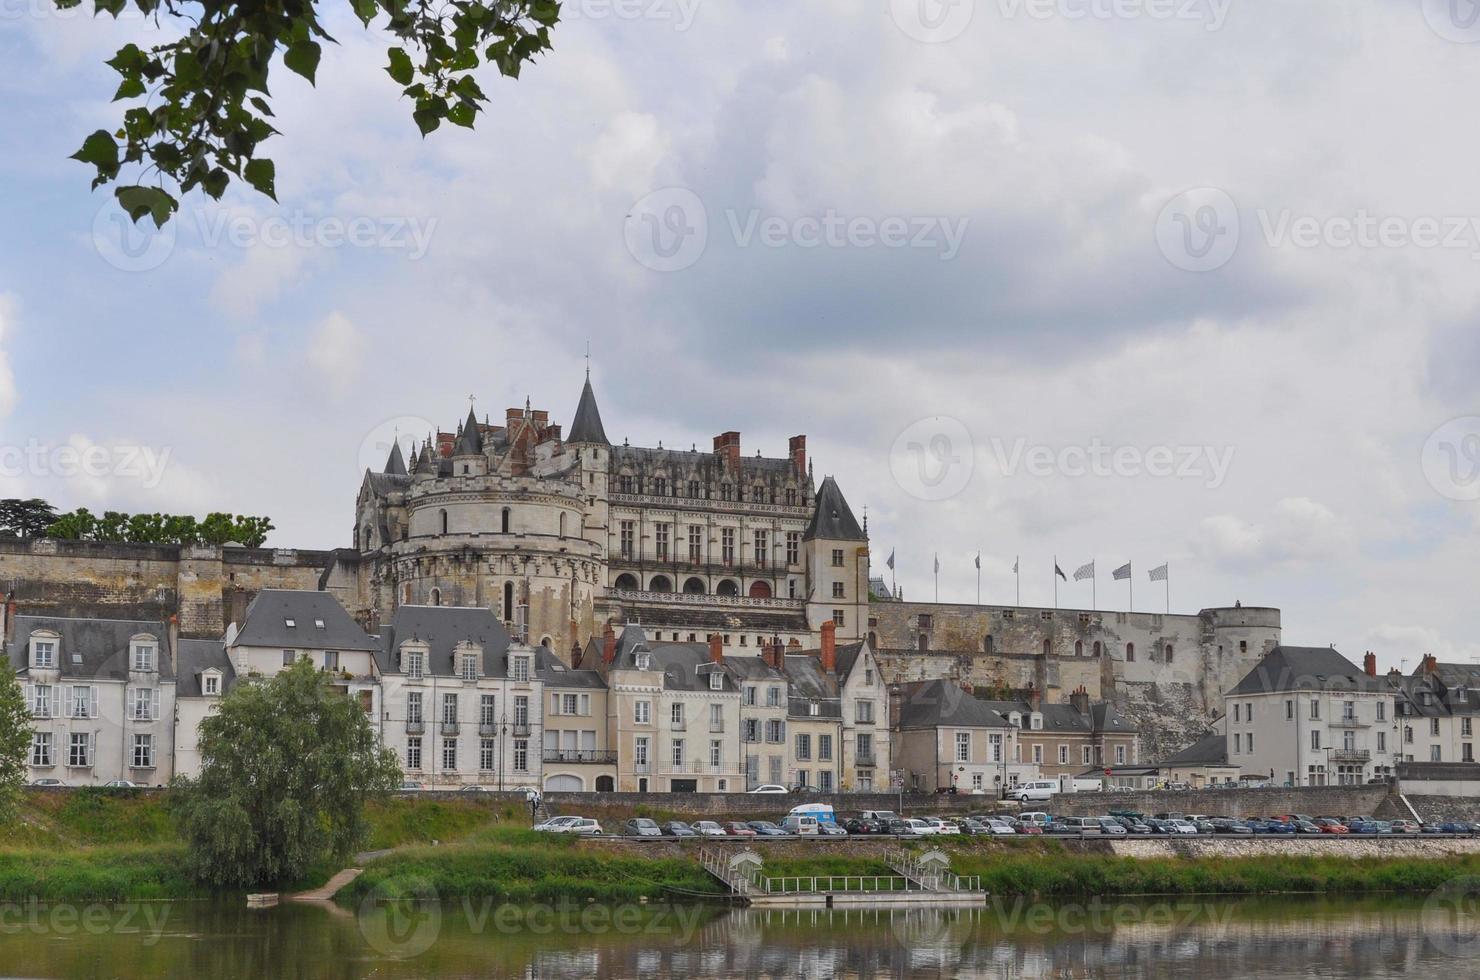 Chateau de Chenonceau castle in France photo